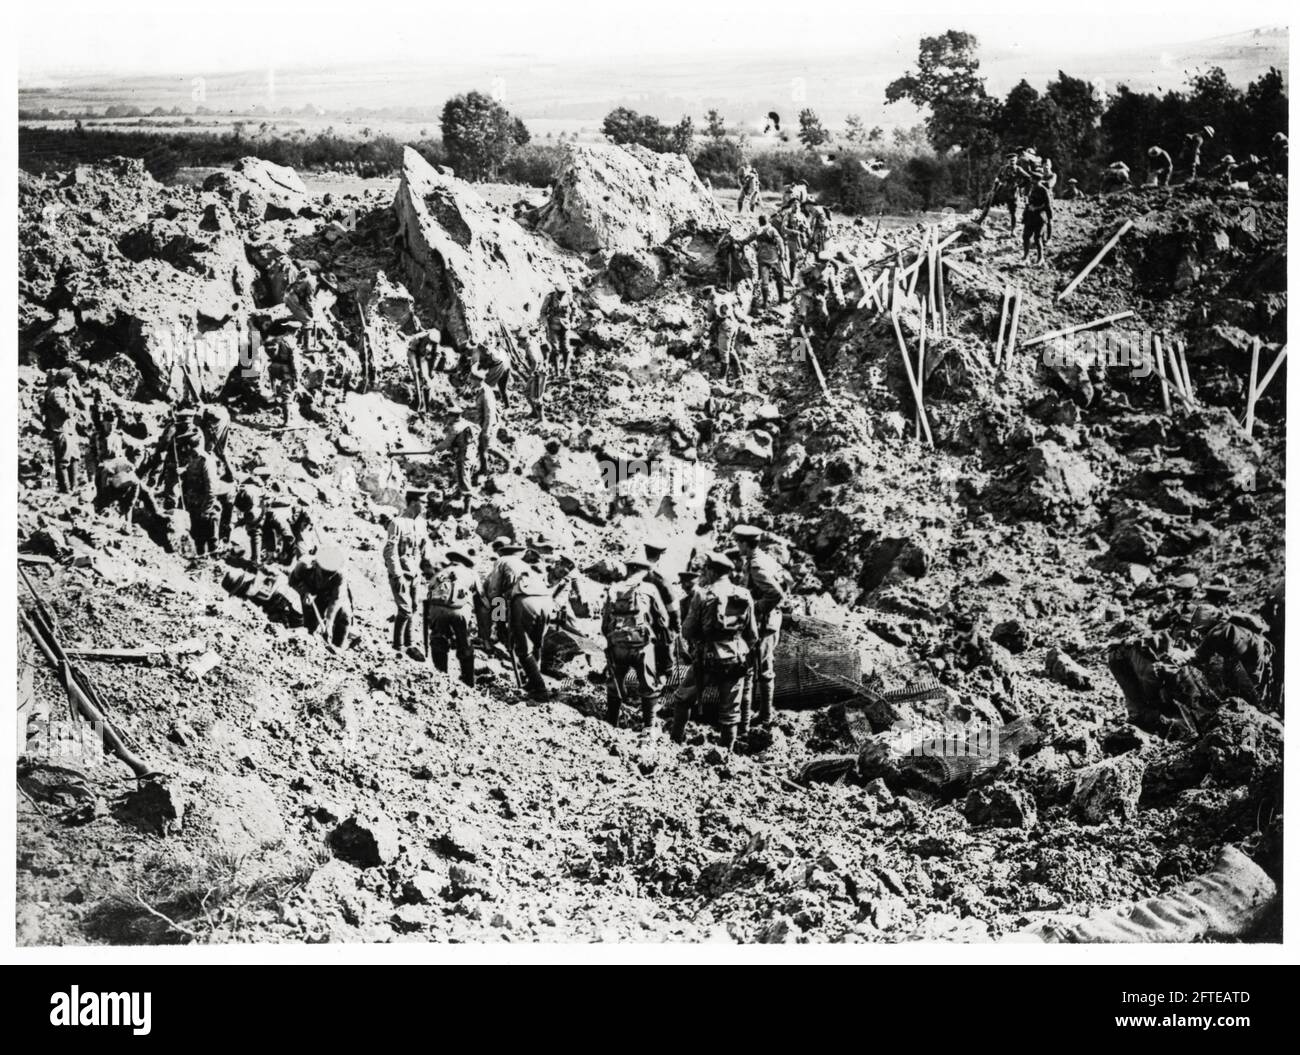 Première Guerre mondiale, première Guerre mondiale, front occidental - vue du cratère minier en cours de consolidation, France Banque D'Images